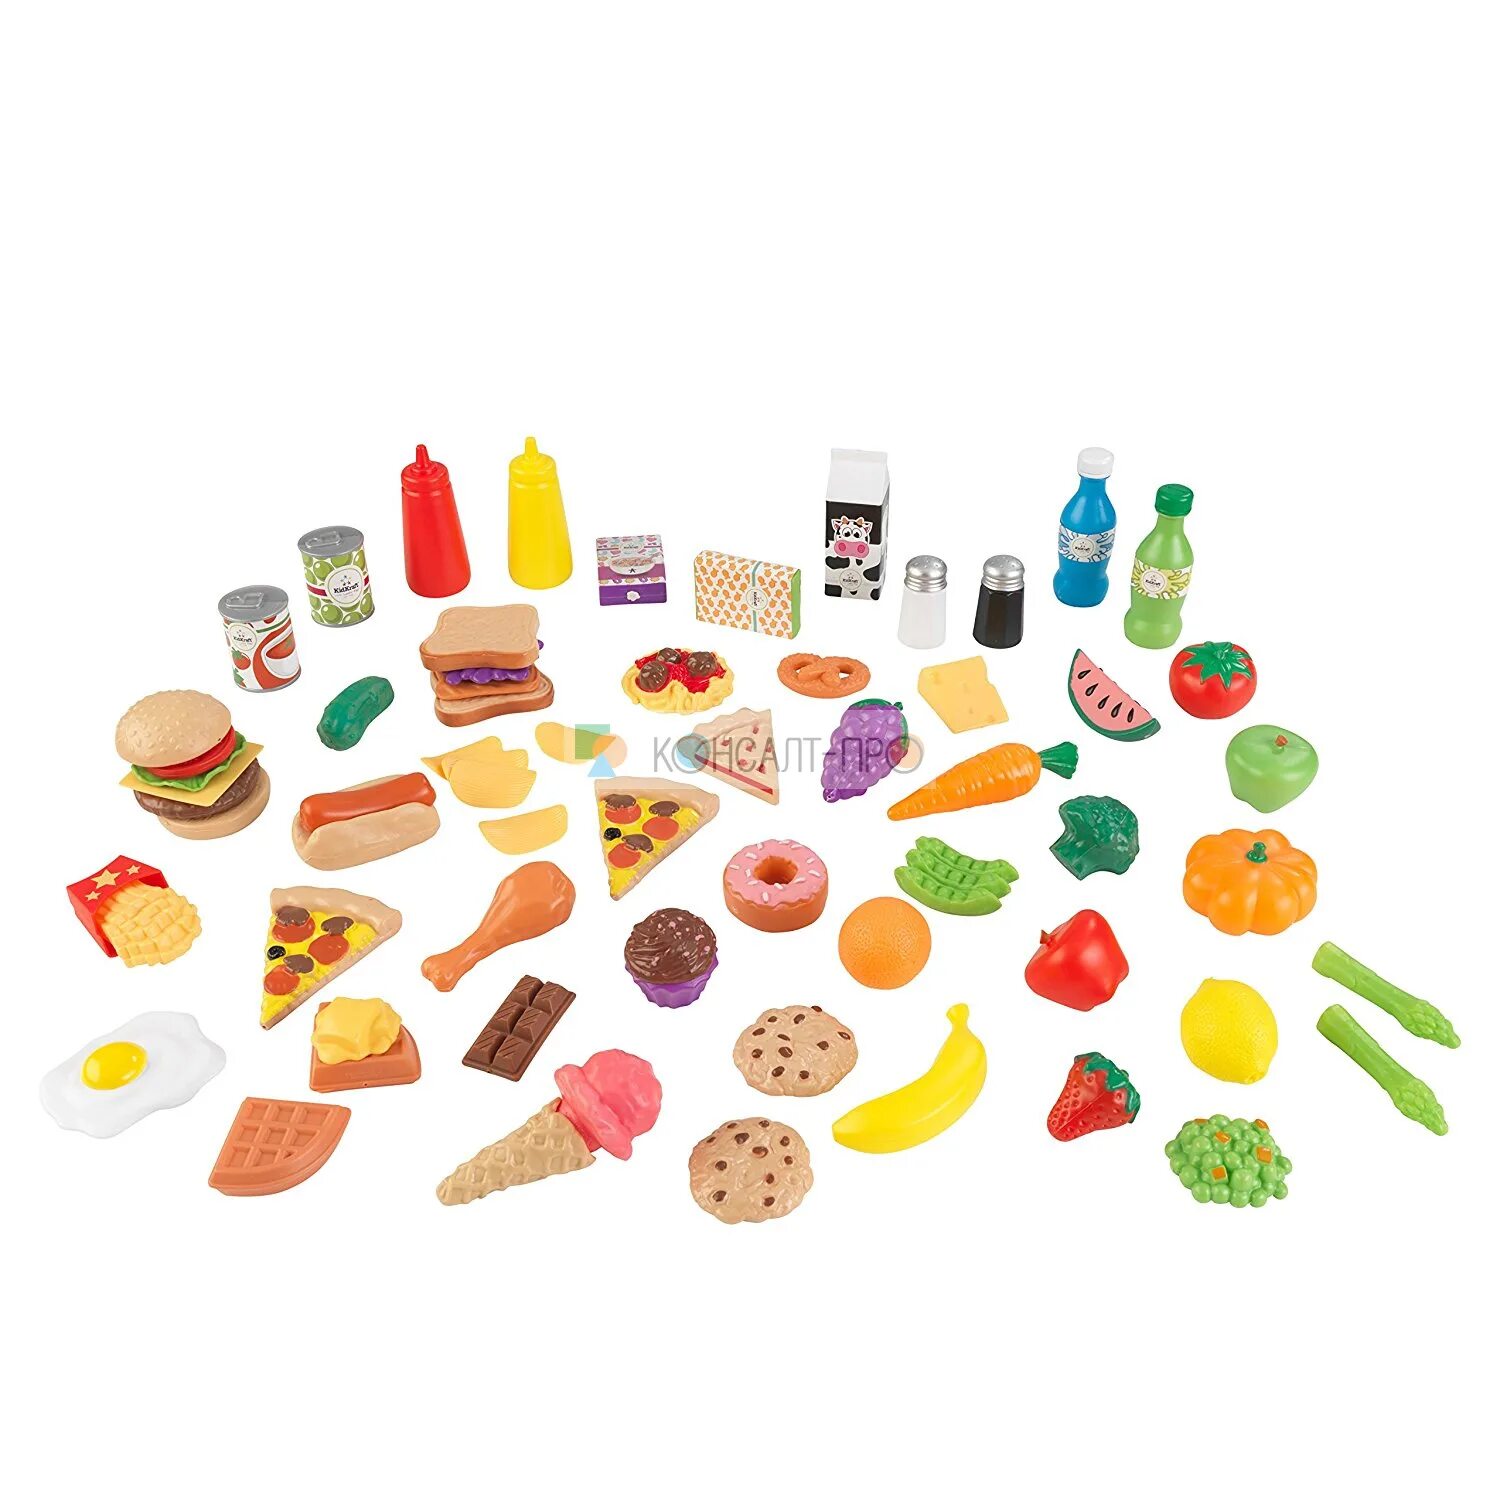 Игрушка мини еда. Набор продуктов kidkraft вкусное удовольствие 63510_ke. Кидкрафт набор еды. Игровой набор еды kidkraft вкусное удовольствие. Игровой набор "продукты".